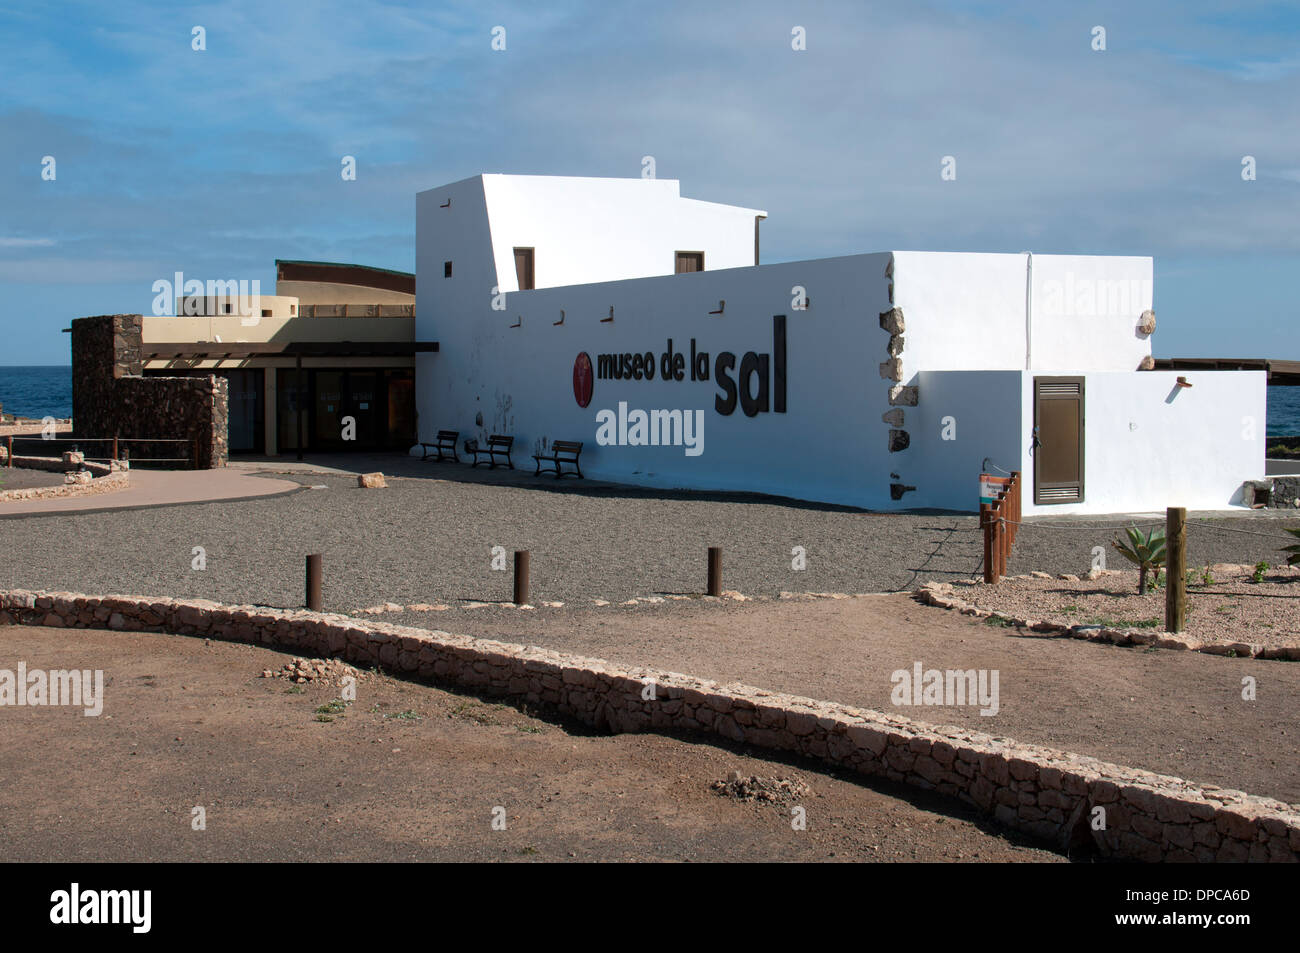 Salt museum near Caleta de Fuste, Fuerteventura, Canary Islands, Spain. Stock Photo